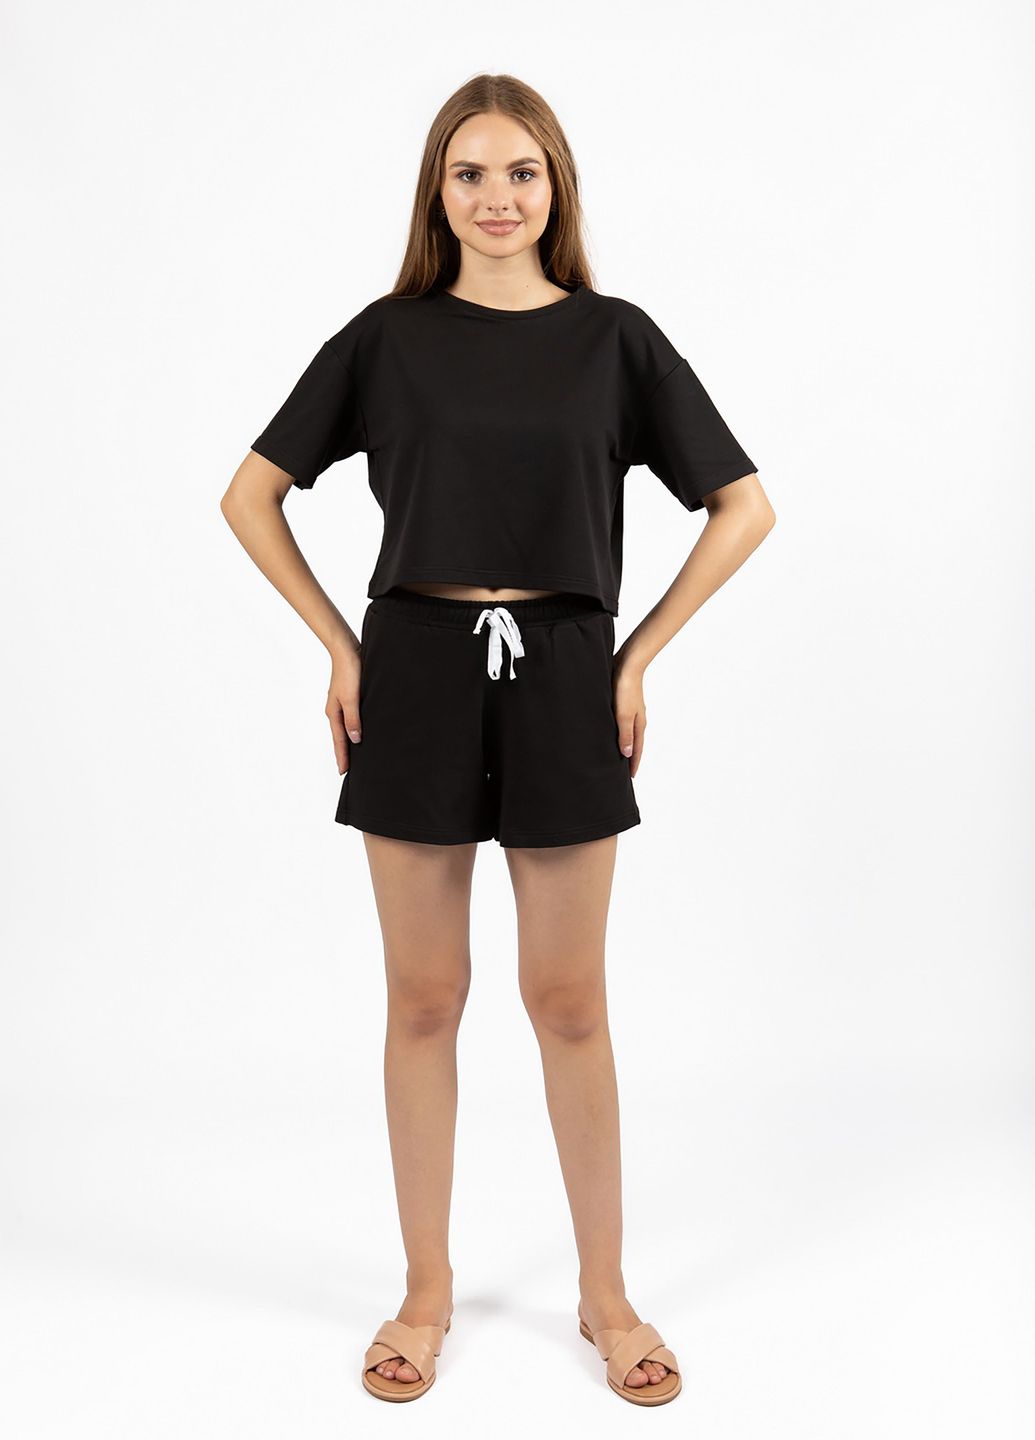 Купить Оверсайз футболка женская Merlini Нарбон 800000002 - Черный, 42-44 в интернет-магазине